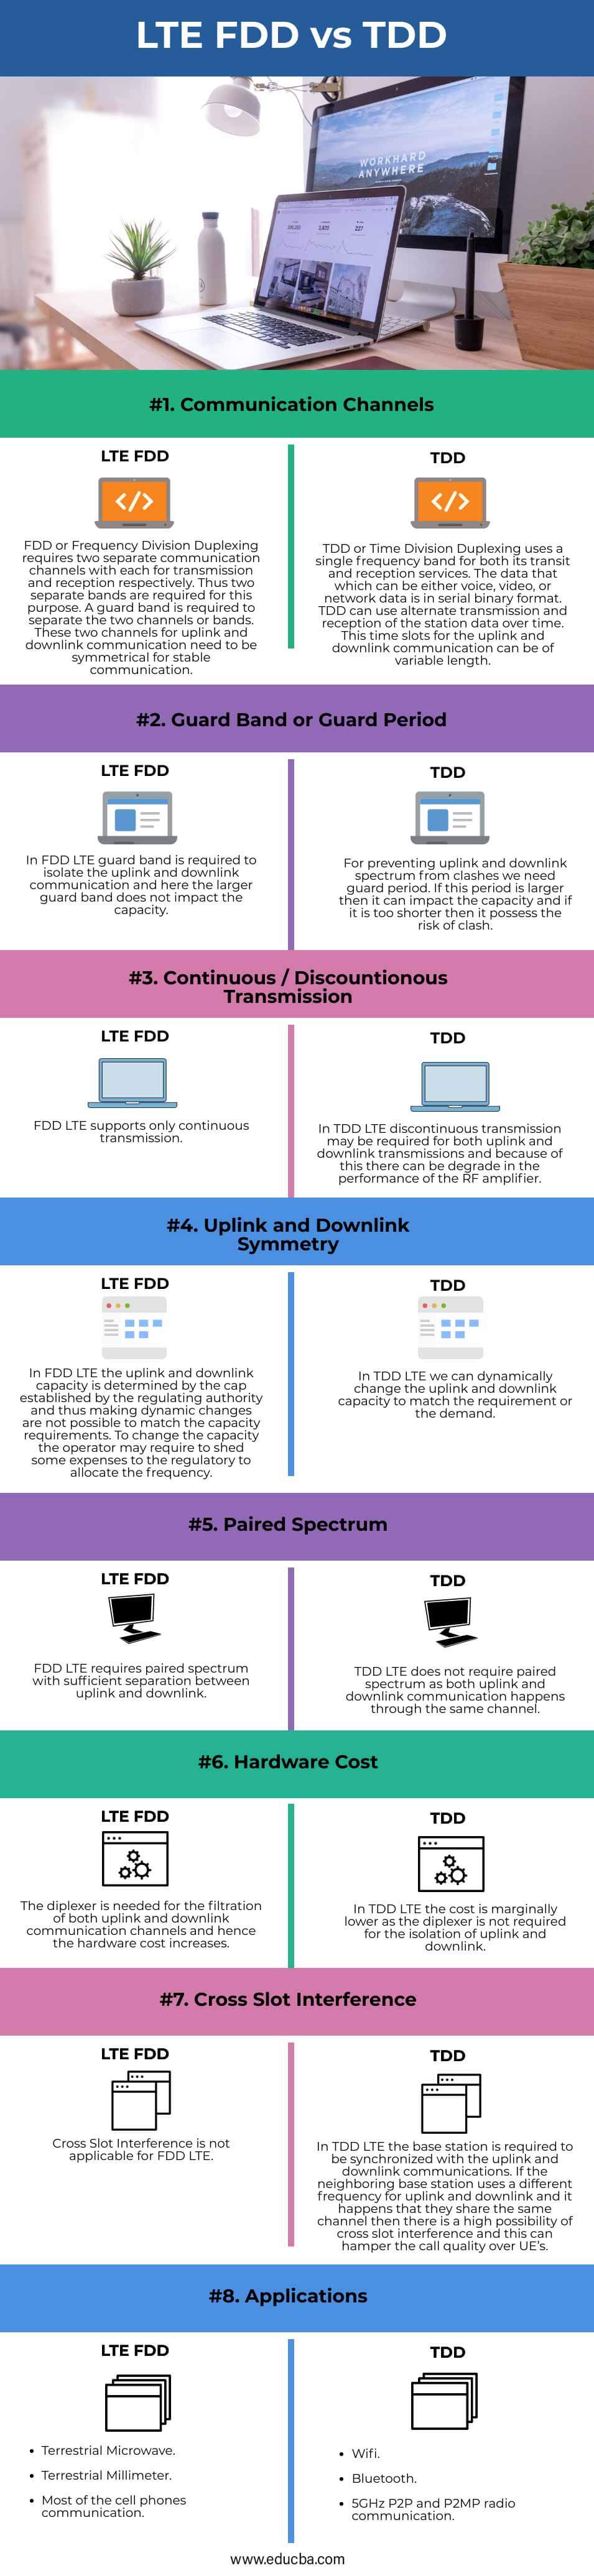 LTE-FDD-vs-TDD-info